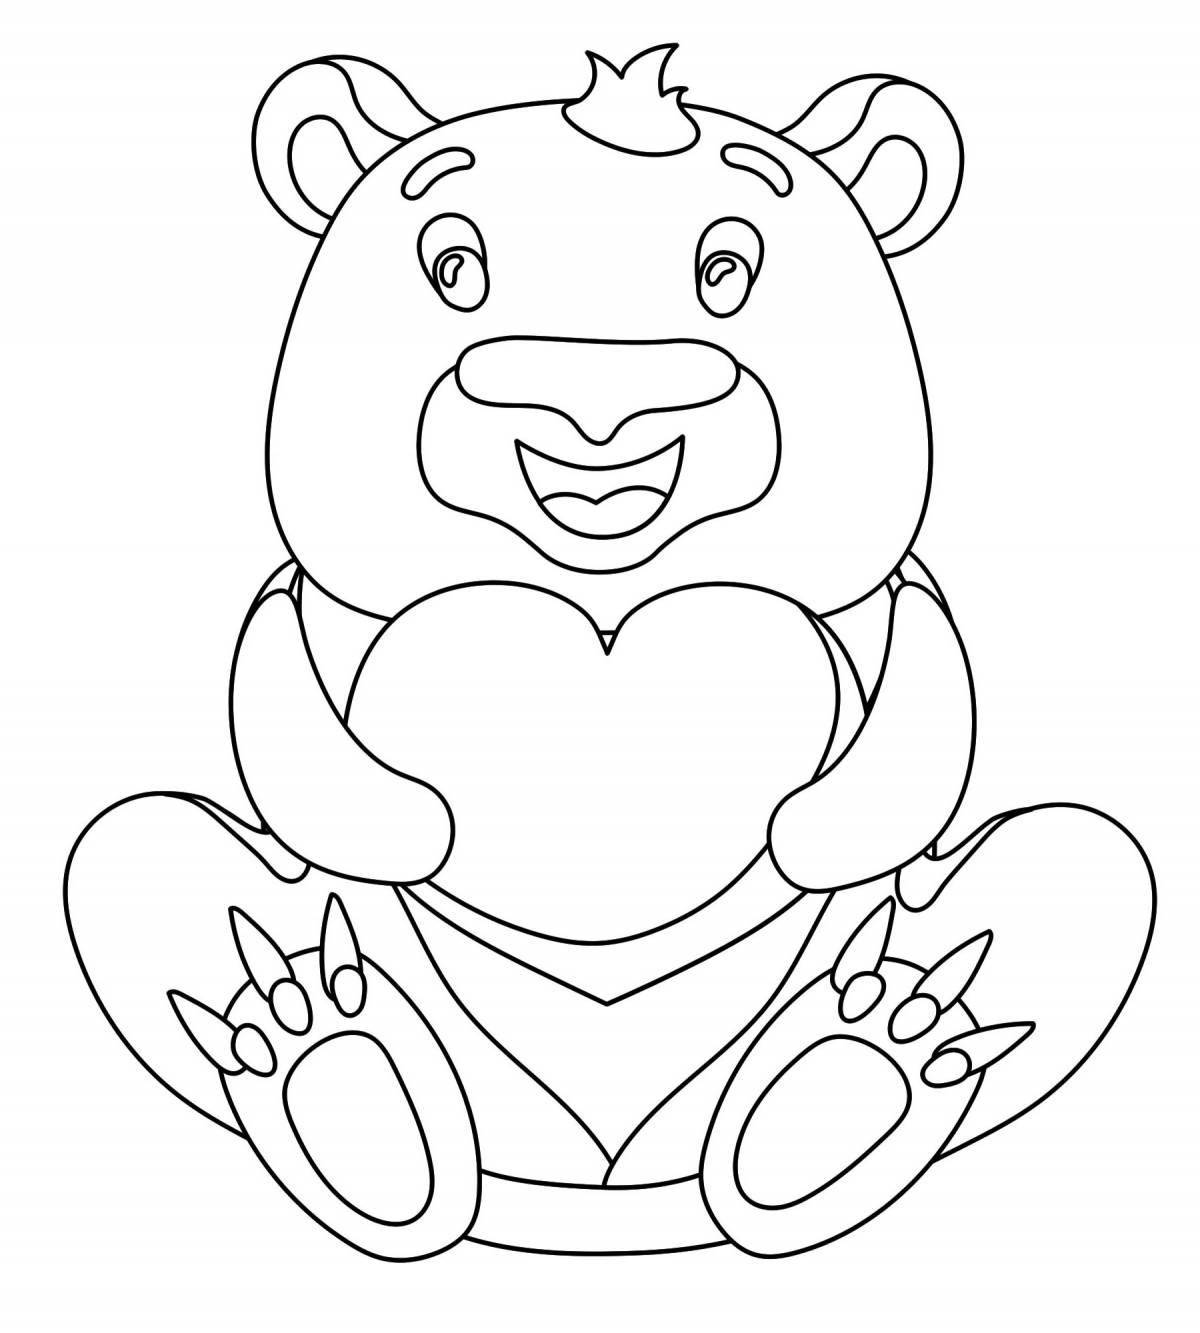 Раскраска «медвежонок с красками» для детей 6-7 лет